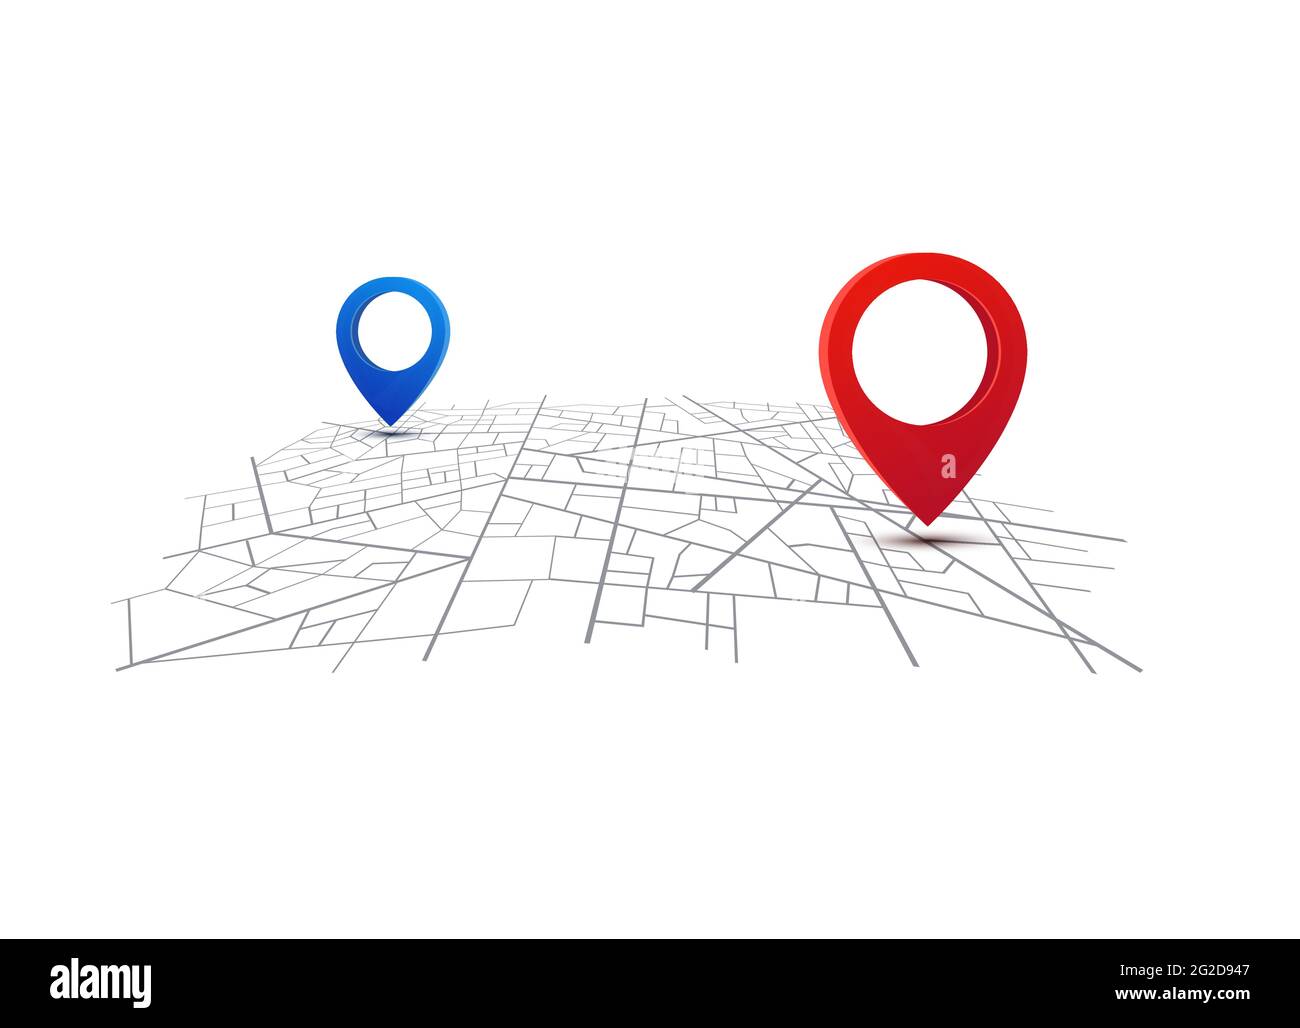 Navigazione GPS con mappa. Mappa stradale della città con perni. App Route Dashboard. Navigatore percorso vettoriale. Illustrazione Vettoriale